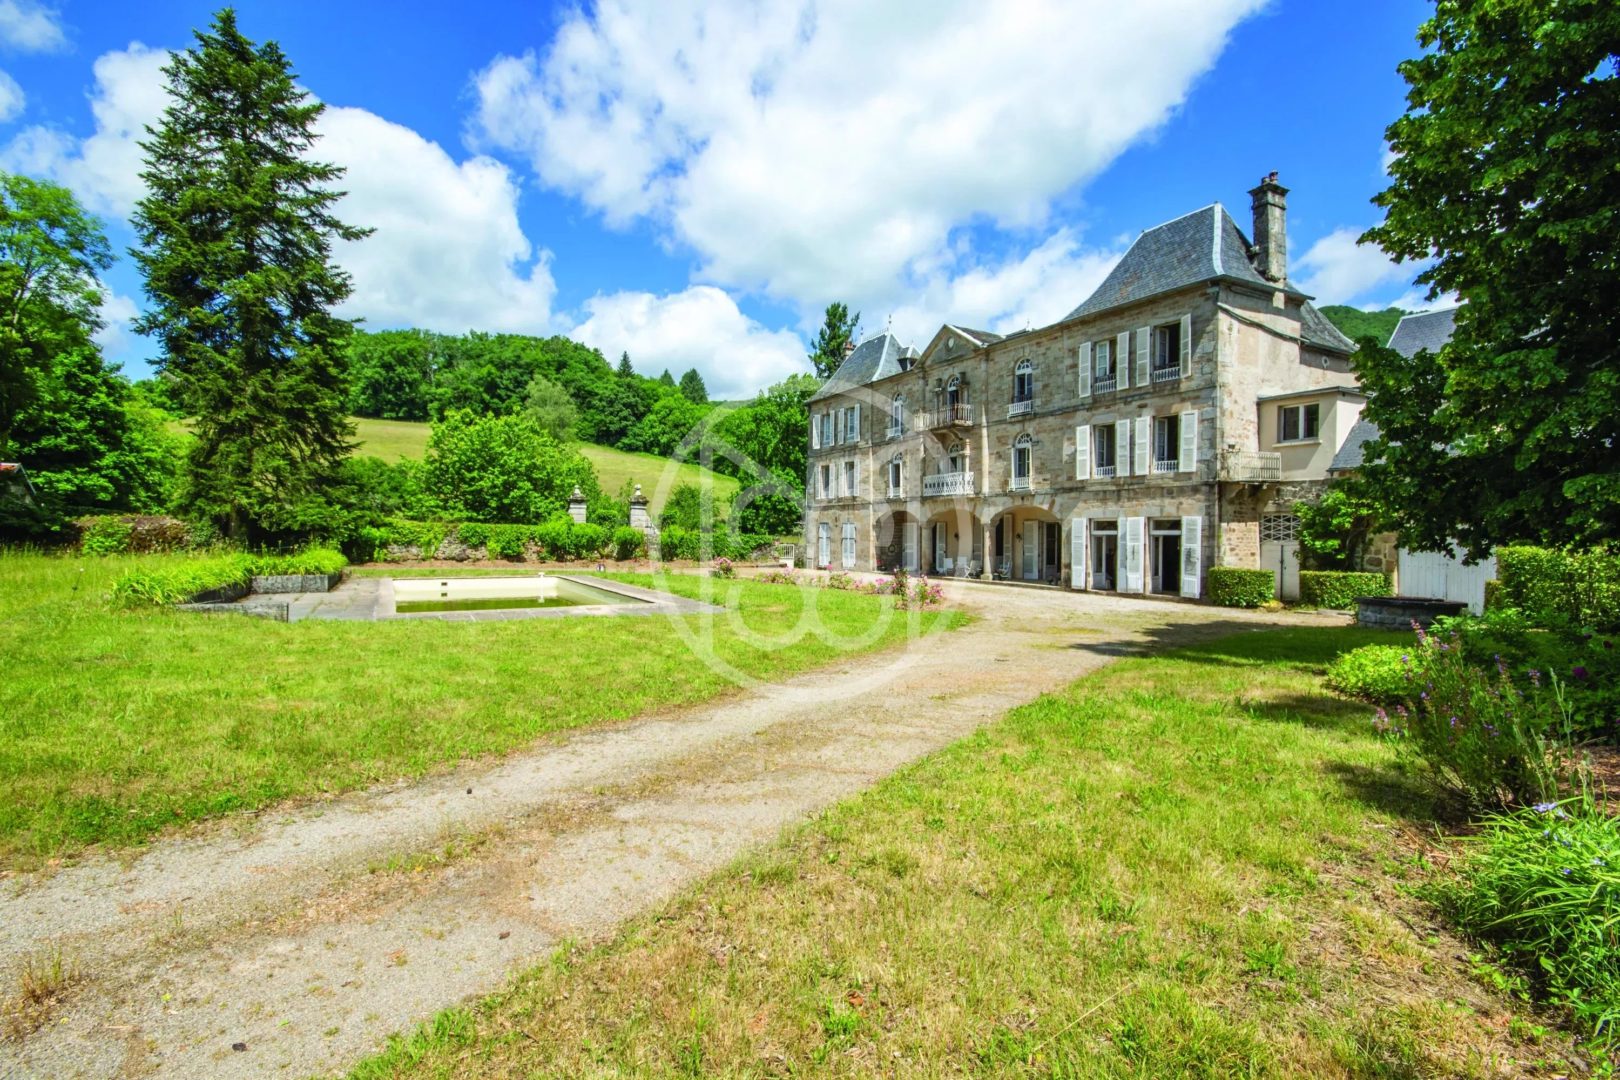 Exclusivité, propriété remaniée au XIXéme siècle, en bordure de la Dordogne, à 10min de Bort les Orgues et ses commodités. - 20102AU